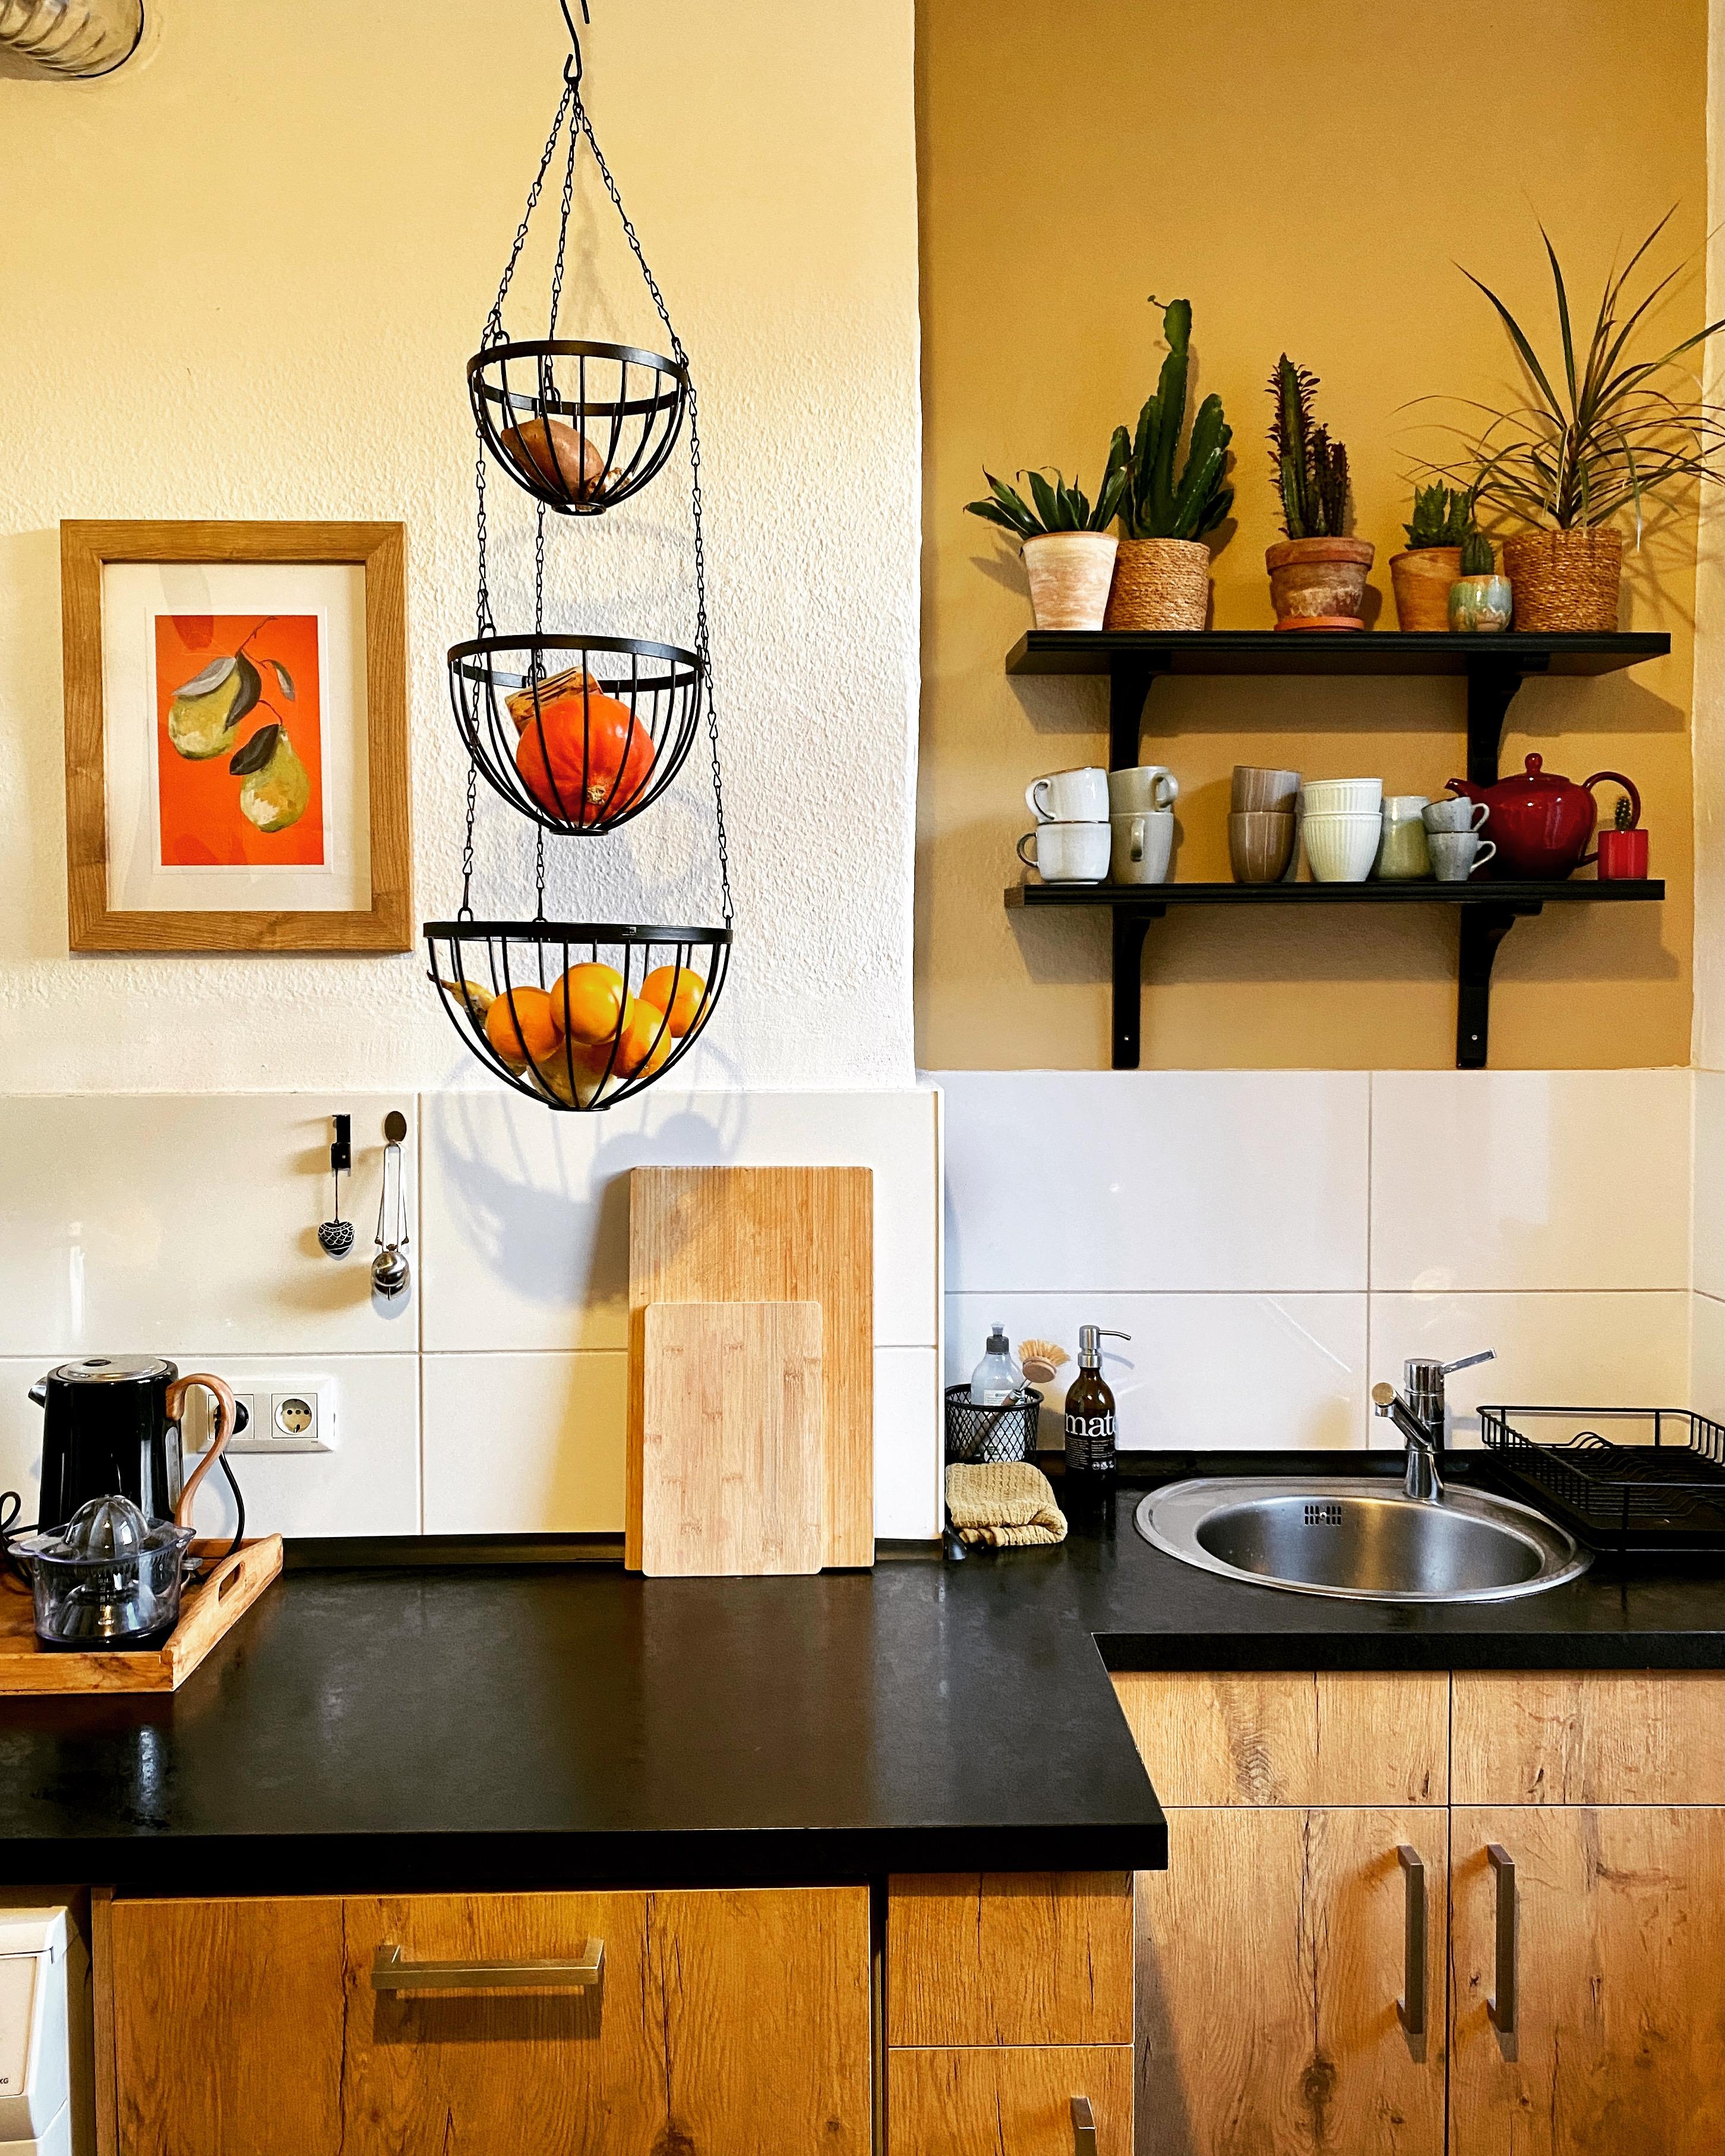 Birnen sind immer im Haus 🍐
#küche #wandfarbe #bild #kücheninspo #holz #schwarzeküche